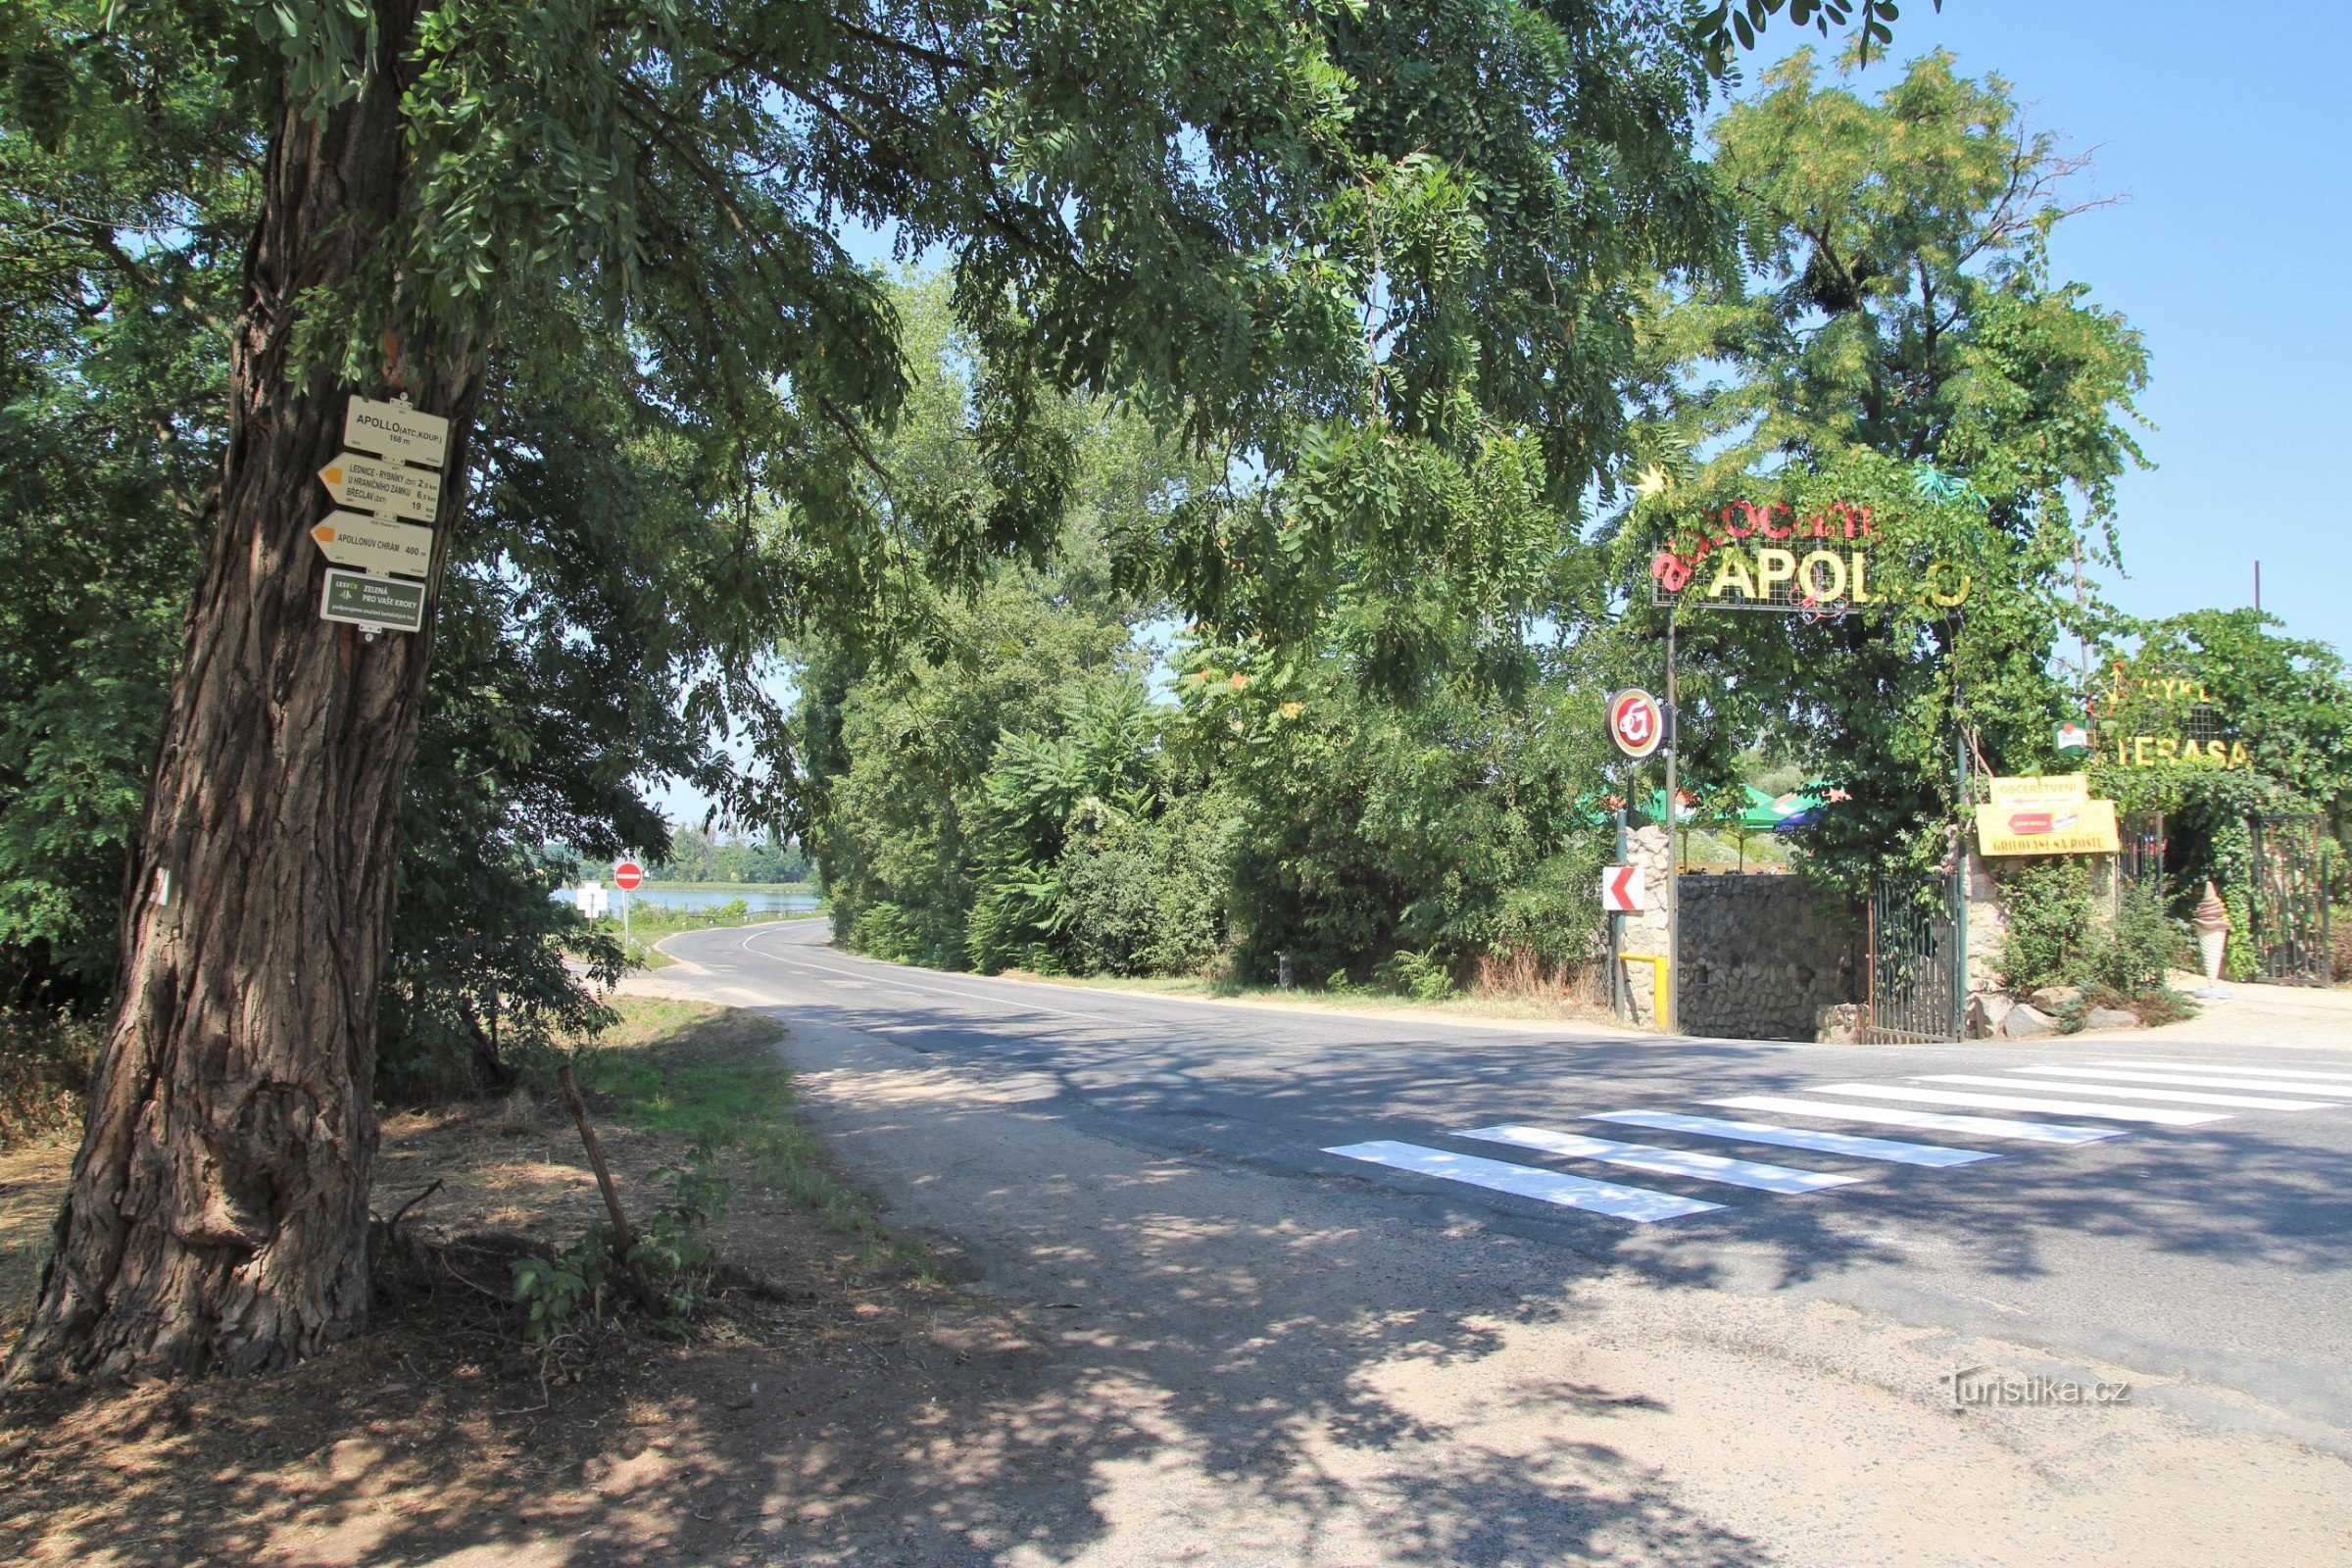 O entroncamento turístico Apollo está localizado em frente à entrada do acampamento de mesmo nome